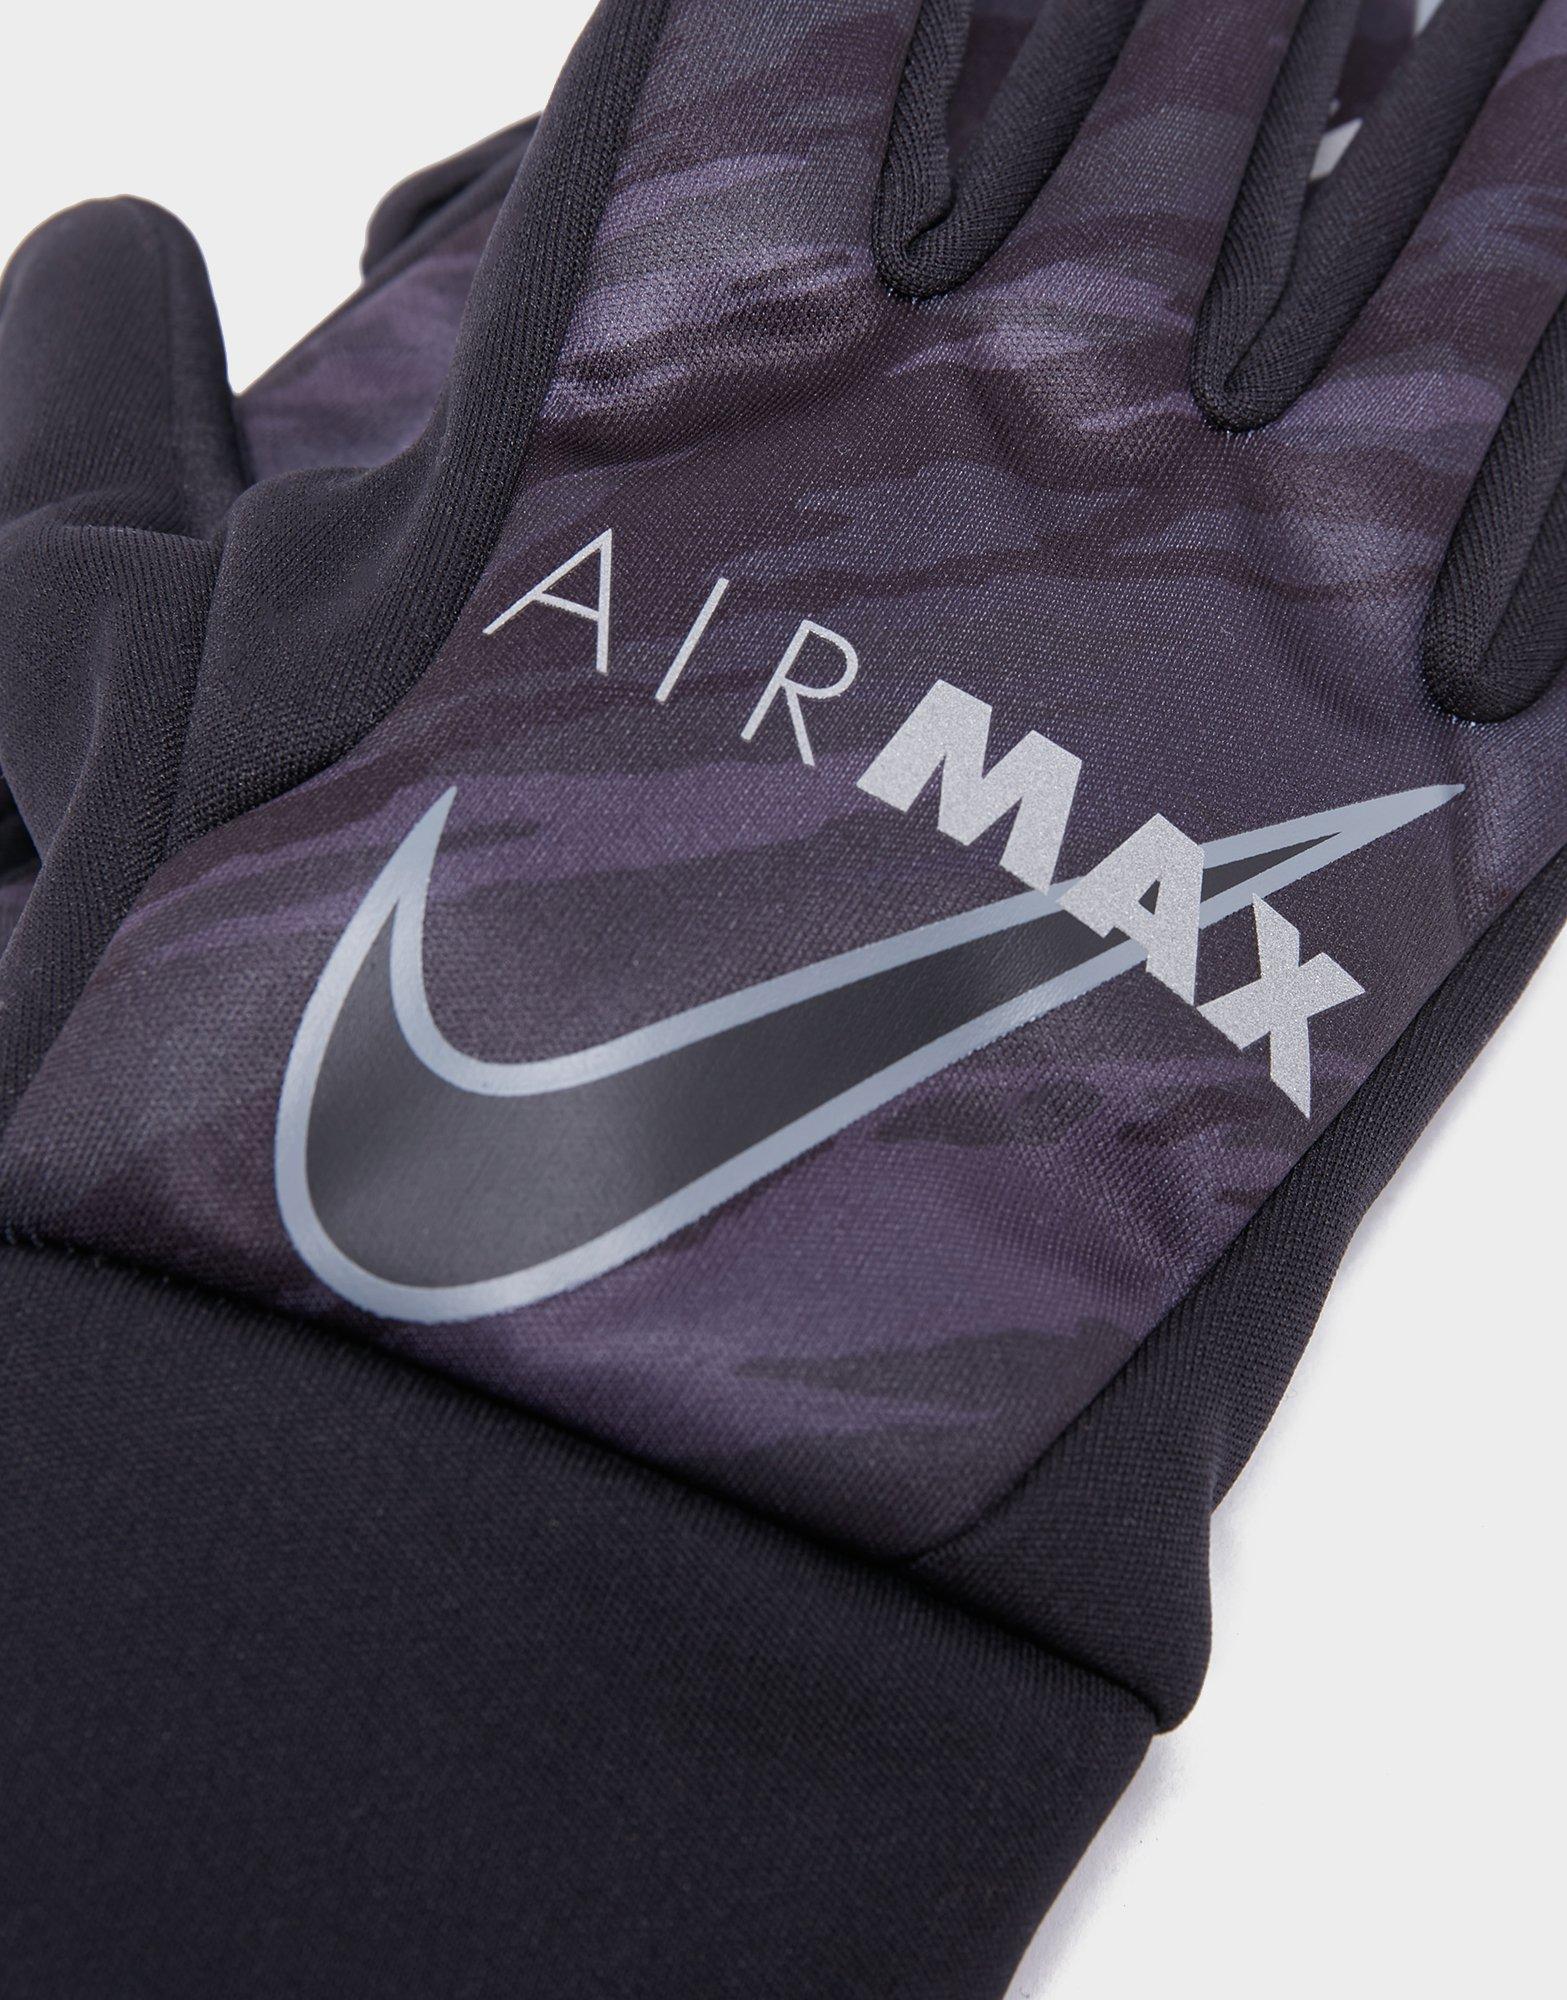 Sitio de Previs Adelantar Están deprimidos Black Nike HyperWarm Air Max Gloves - JD Sports